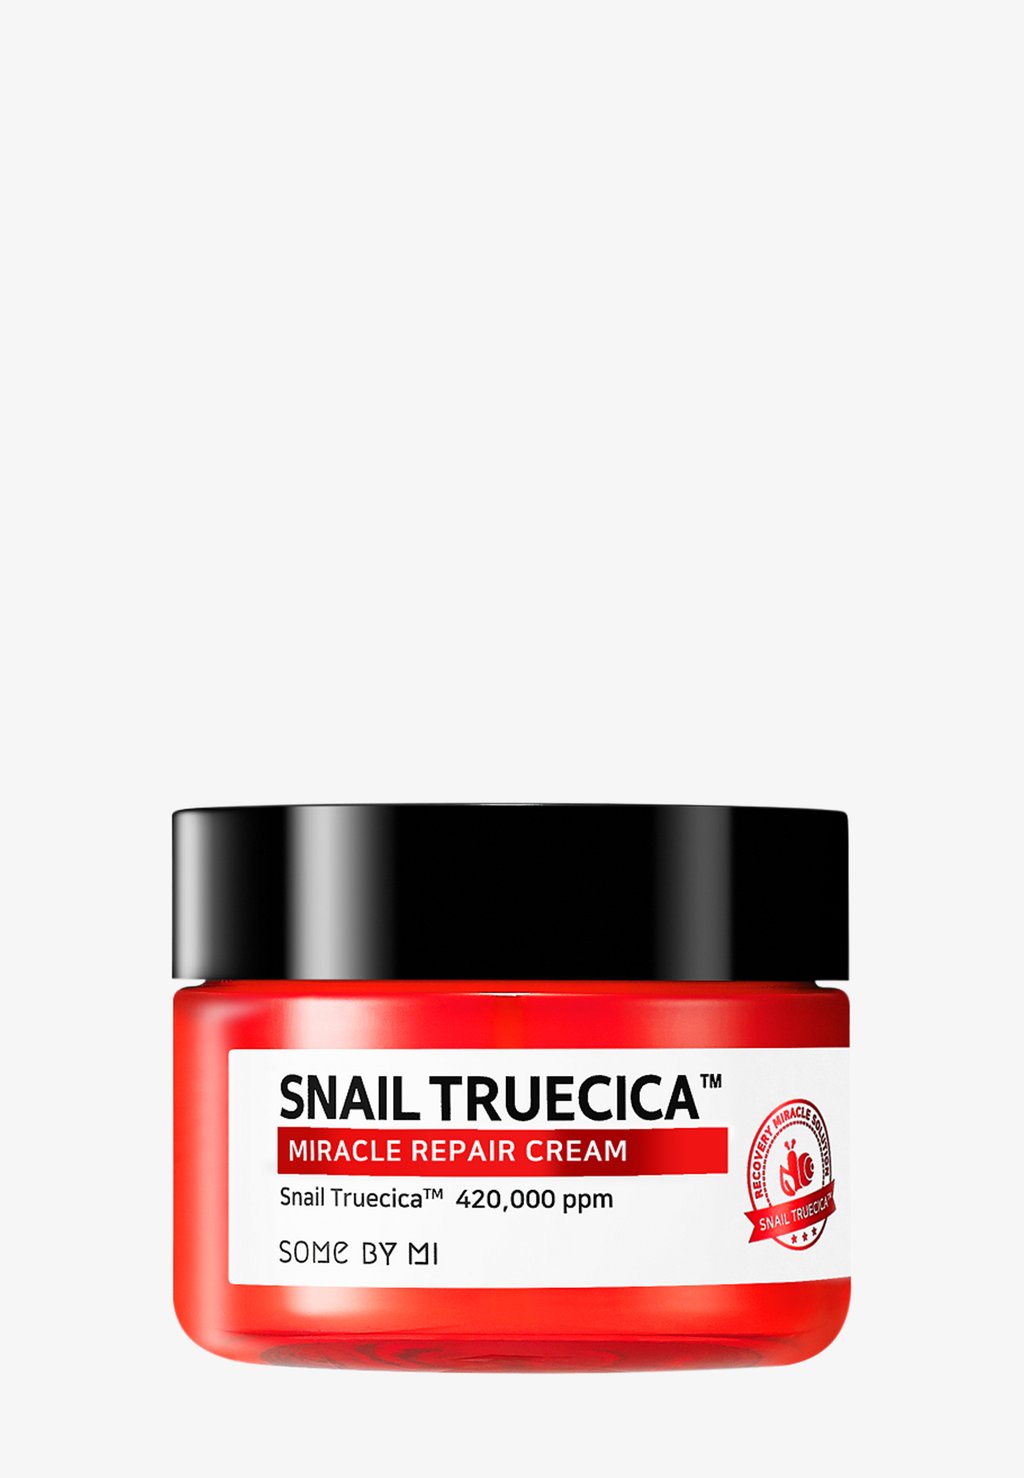 Дневной крем Snail Truecica Miracle Repair Cream SOME BY MI some by mi snail trucica miracle repair cream 60 g